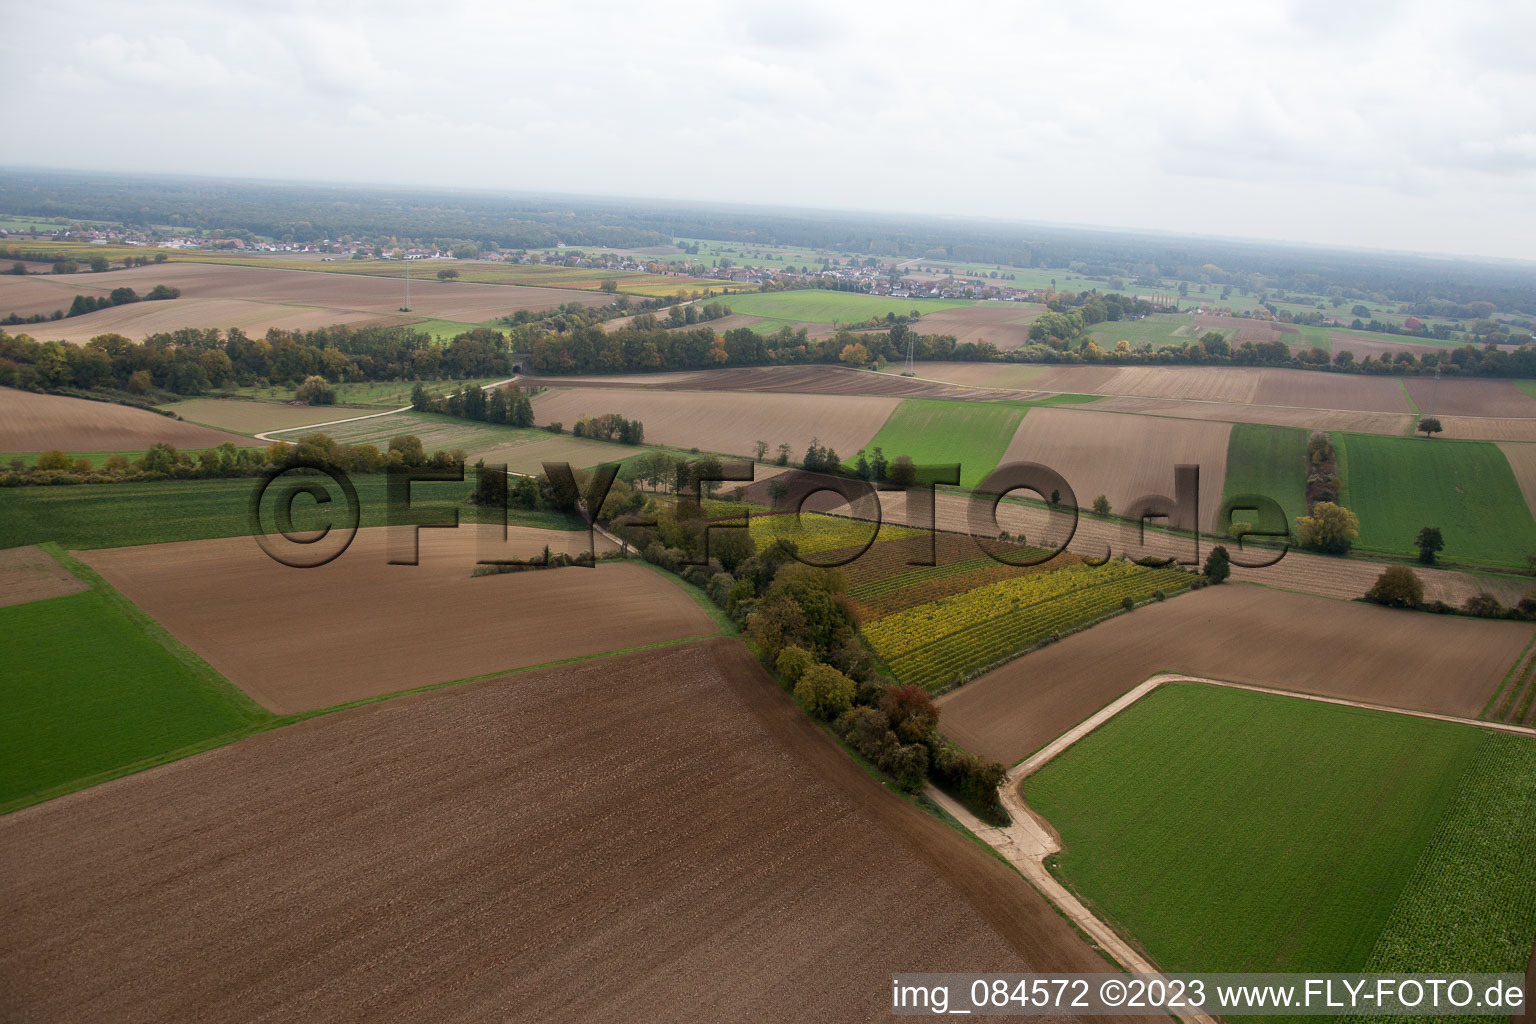 Winden im Bundesland Rheinland-Pfalz, Deutschland aus der Luft betrachtet